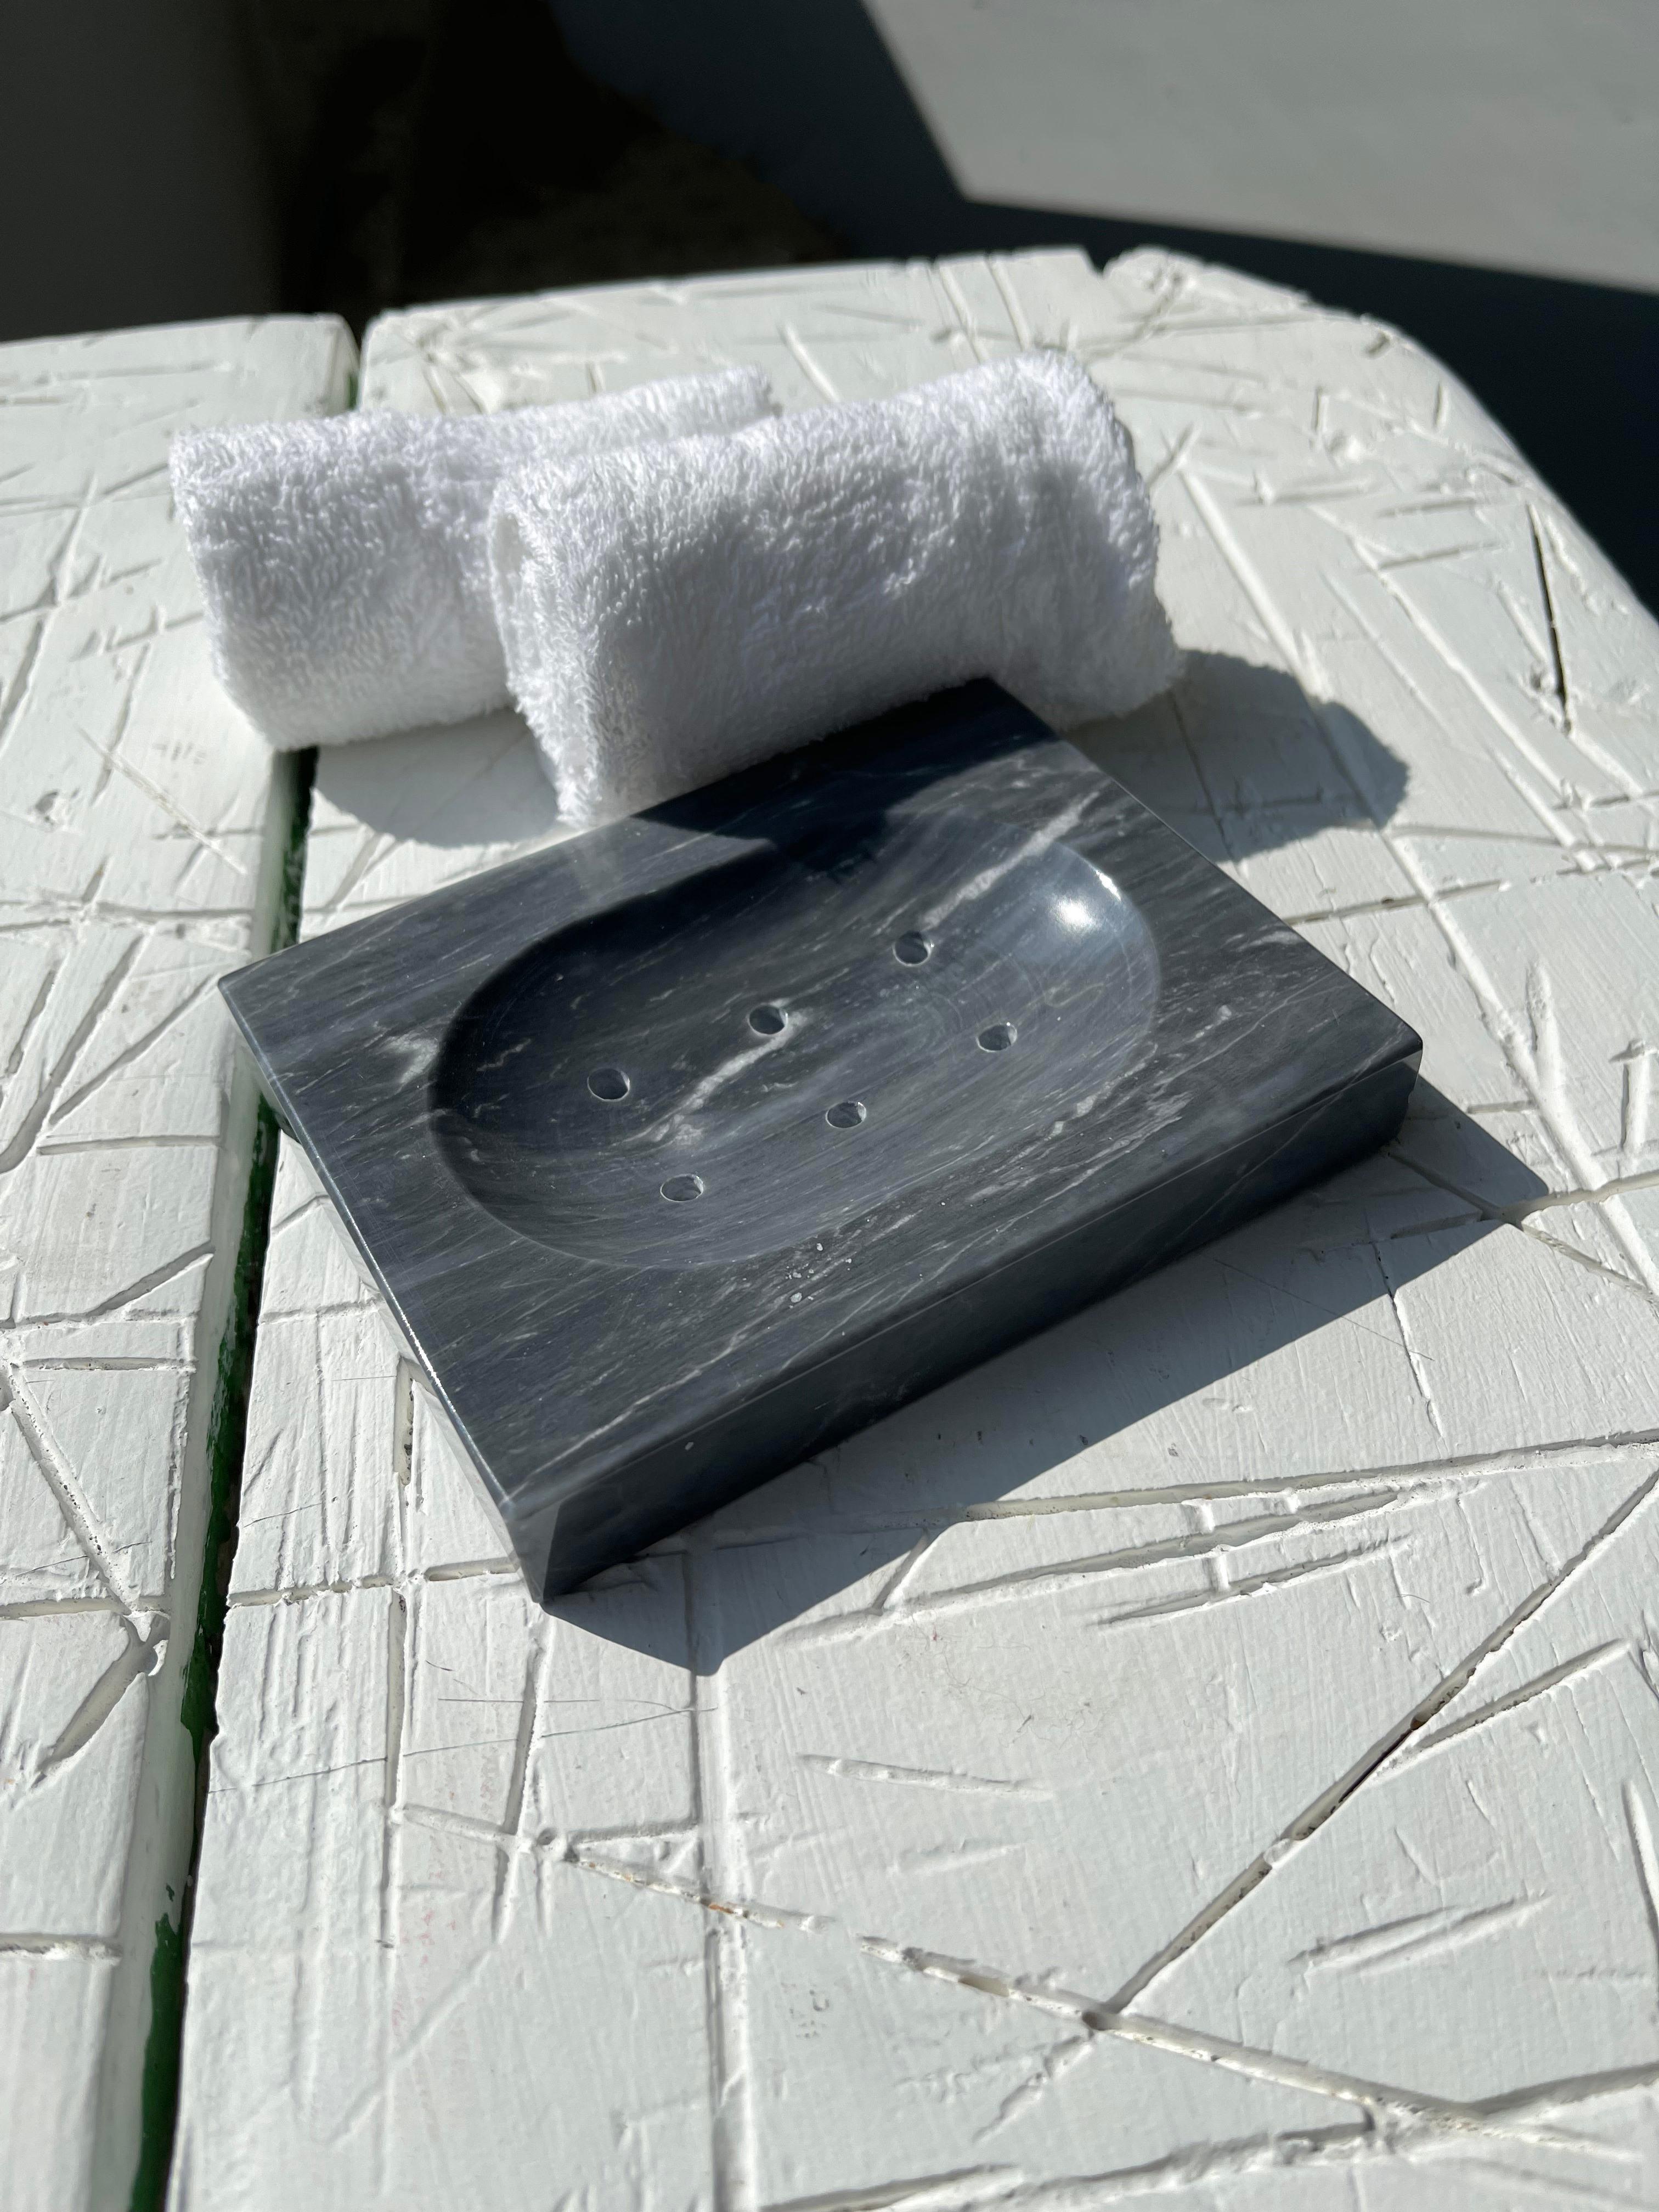 Porte-savon carré en marbre gris Bardiglio avec des petits trous pour l'eau.

Chaque pièce est en quelque sorte unique (puisque chaque bloc de marbre est différent par ses veines et ses nuances) et fabriquée à la main en Italie. Les légères